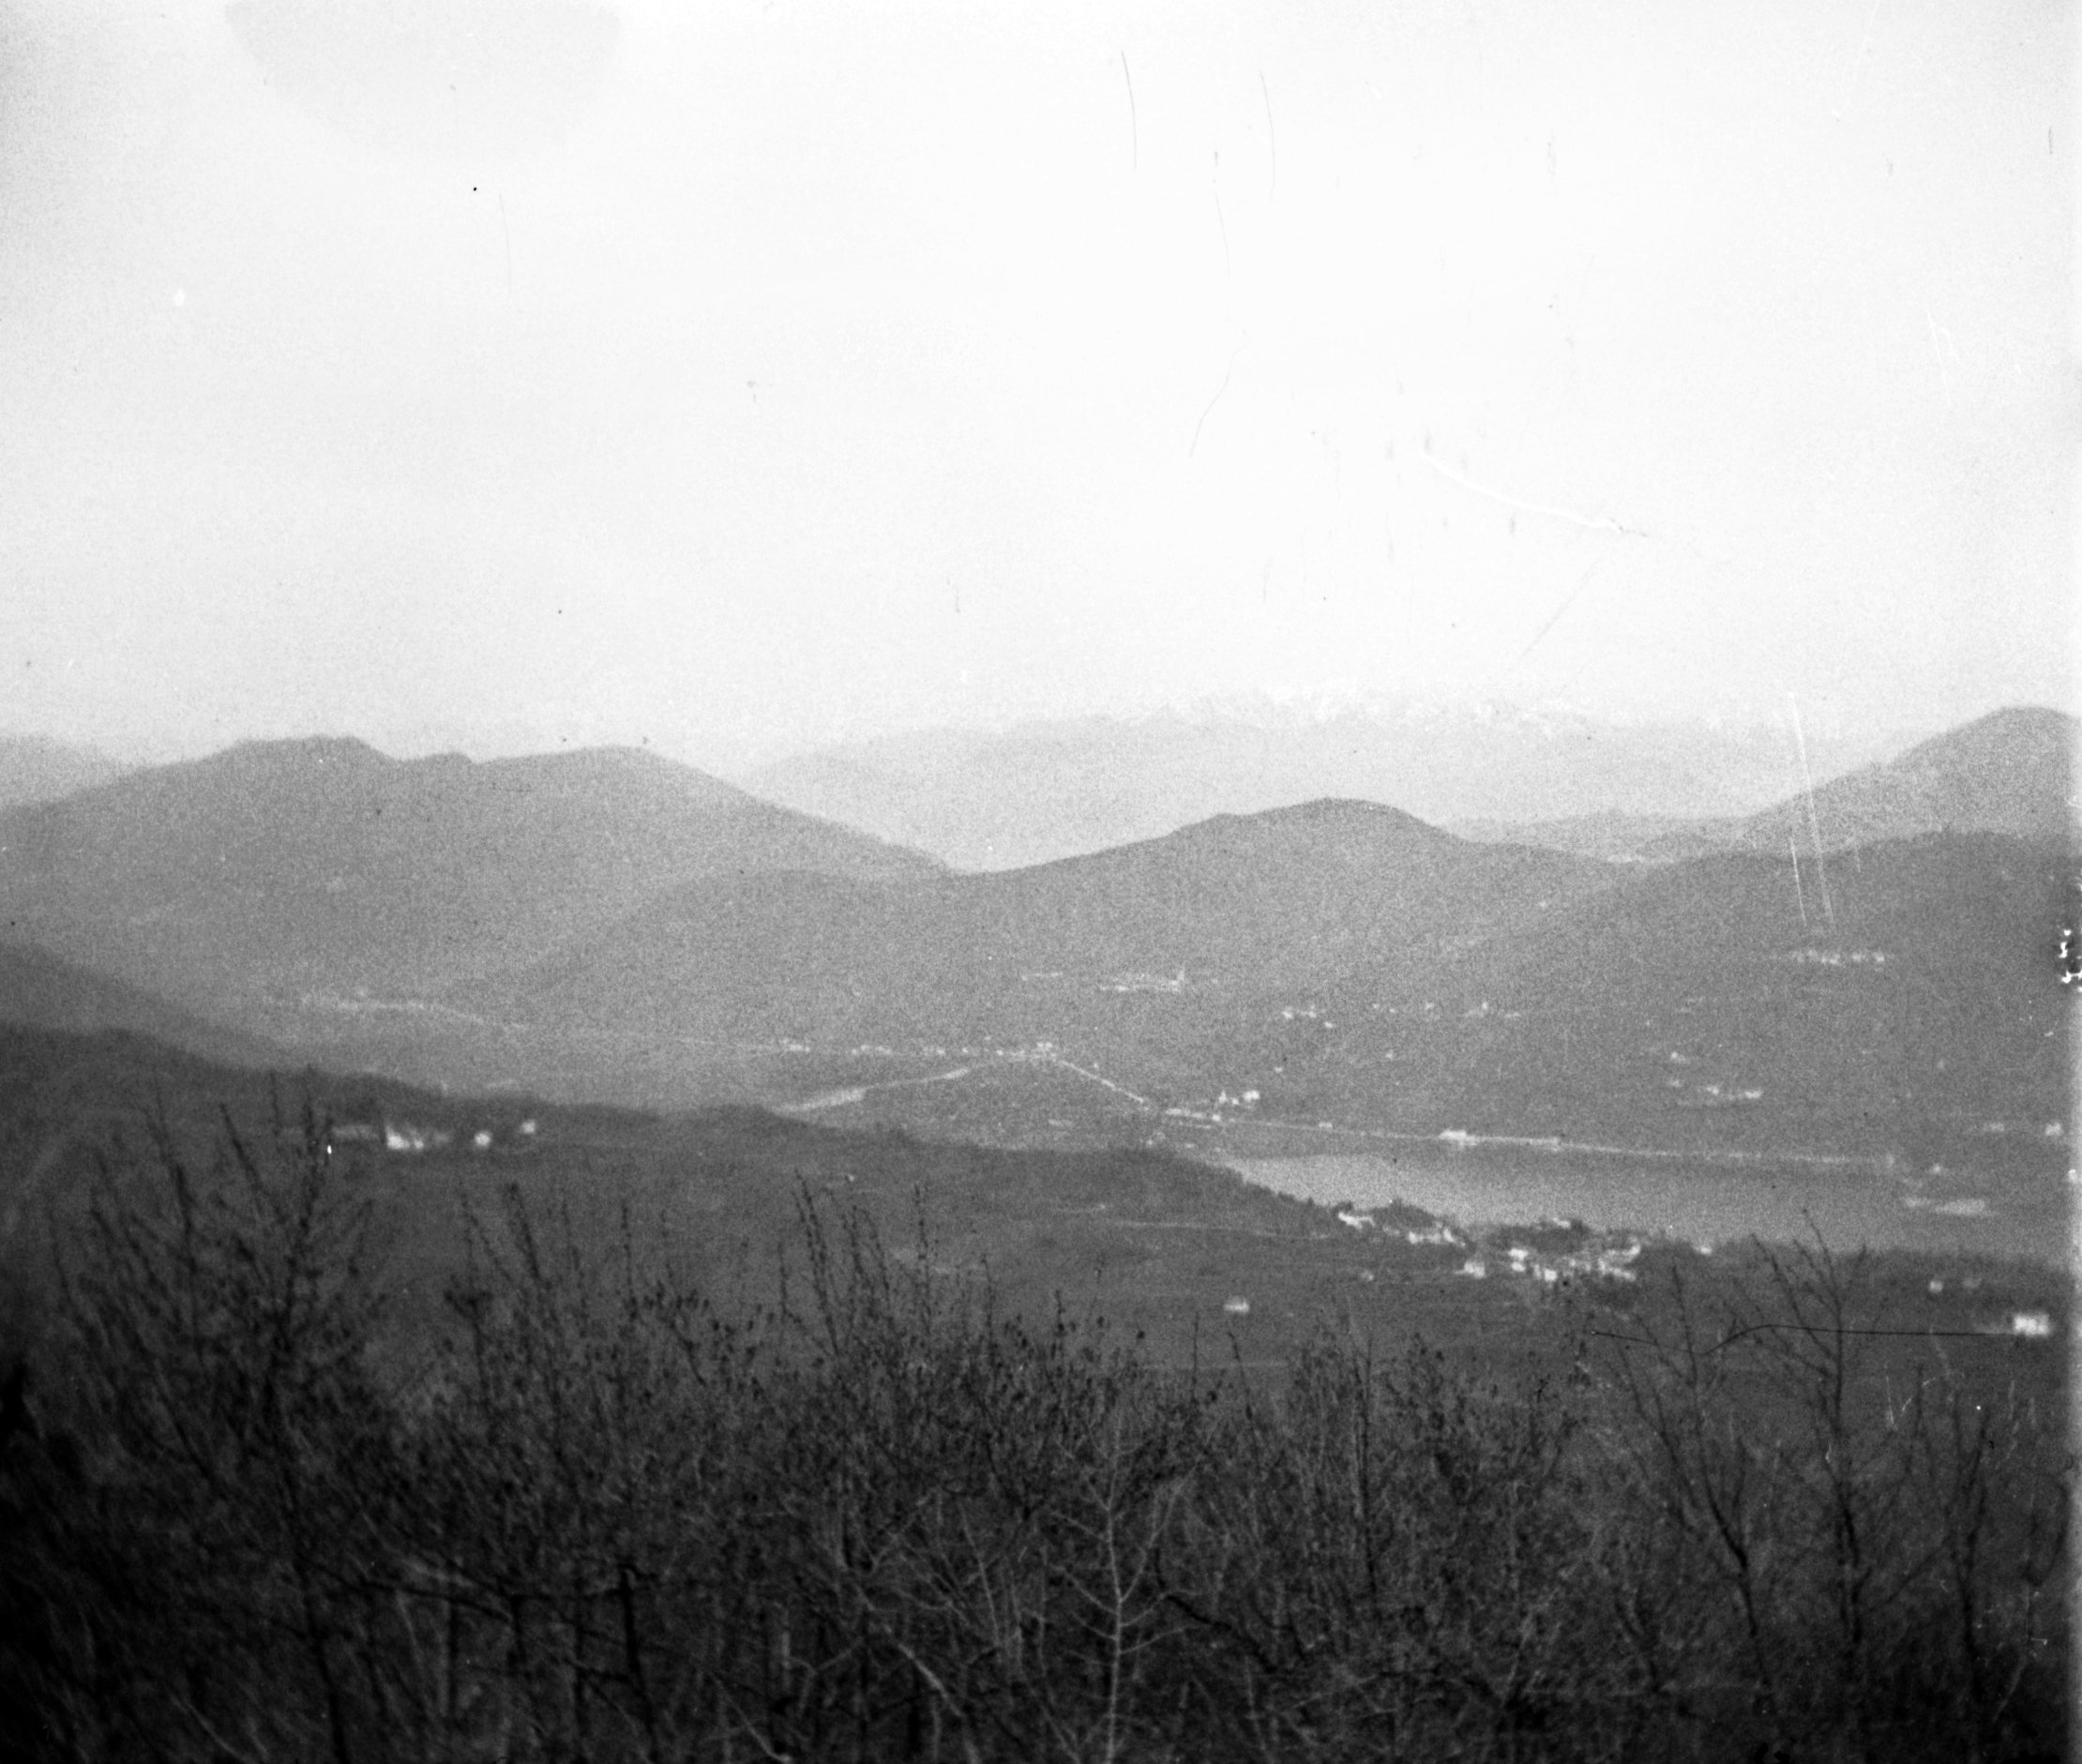 Aussicht vom Monte San Salvatore in Lugano (April 1903), 87368 sn R_o.jpg (DRM CC BY-NC-SA)